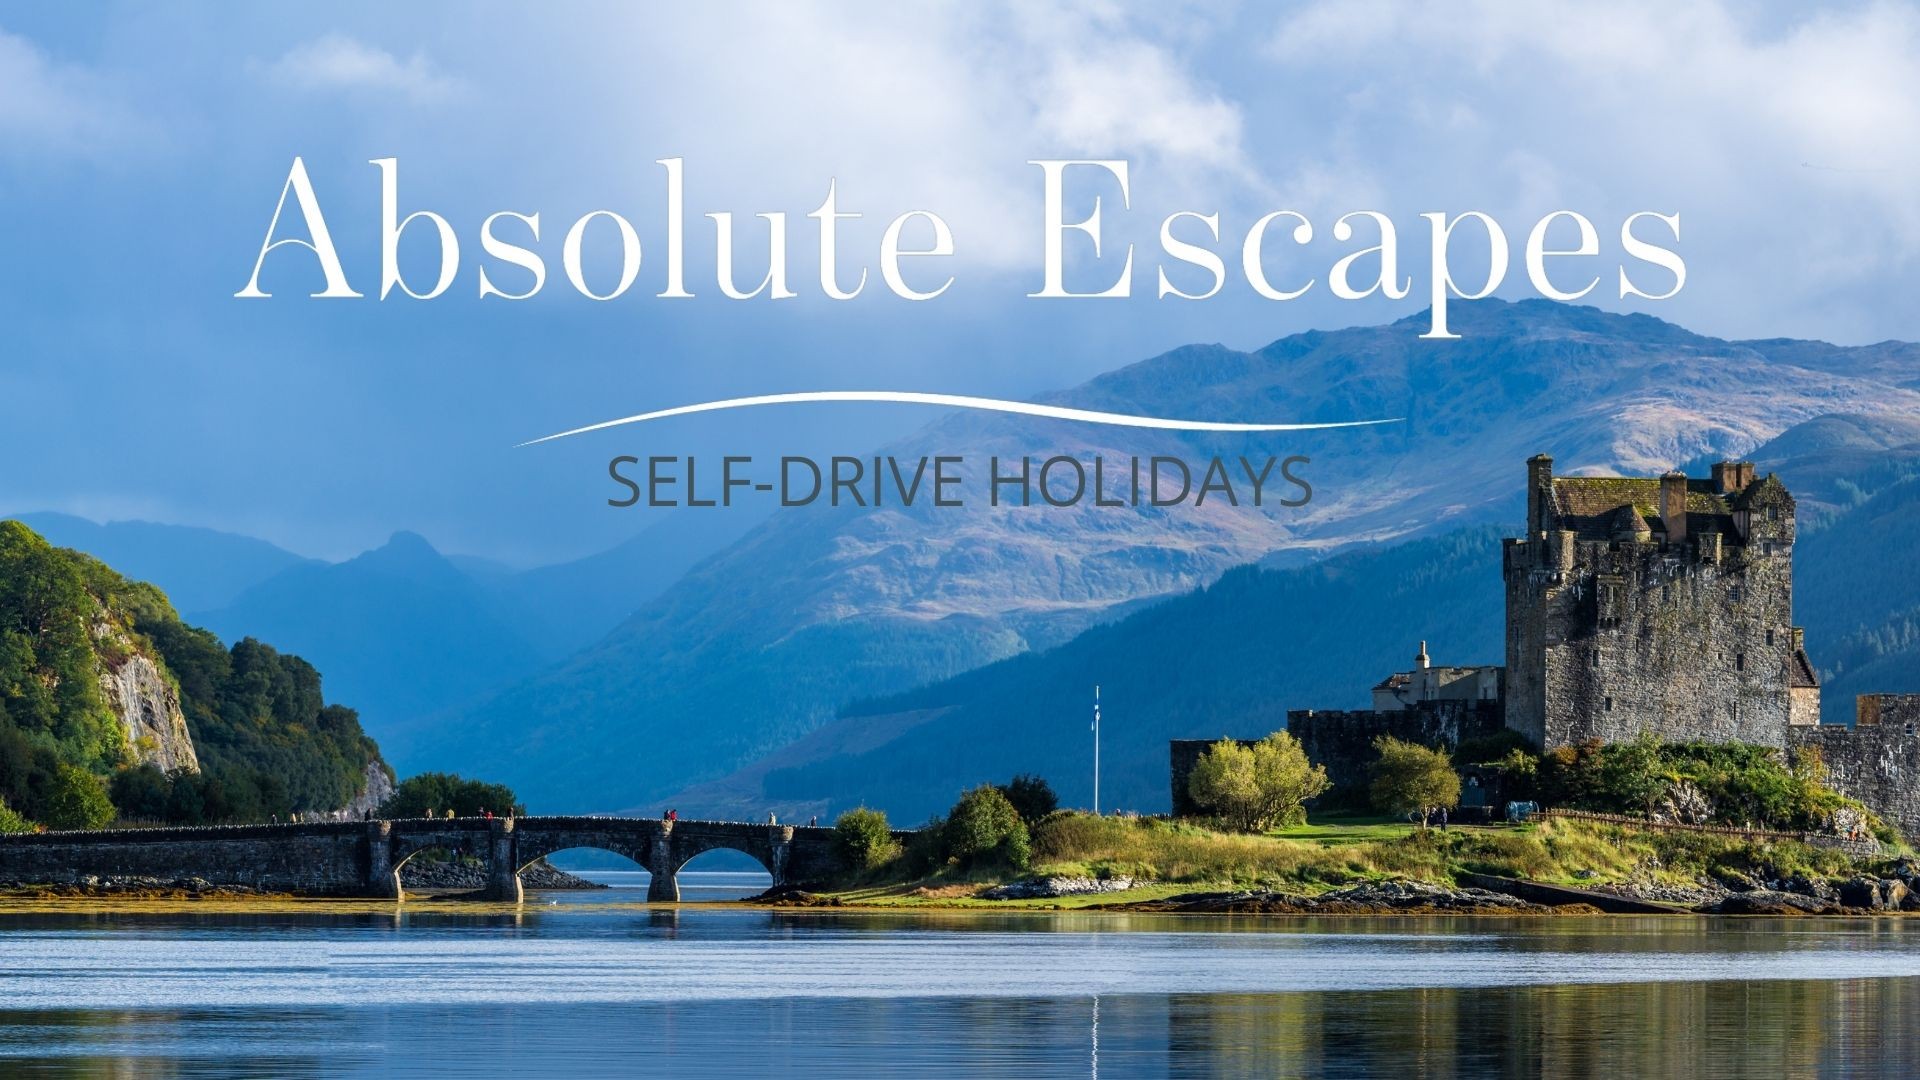 scotland official tourism website